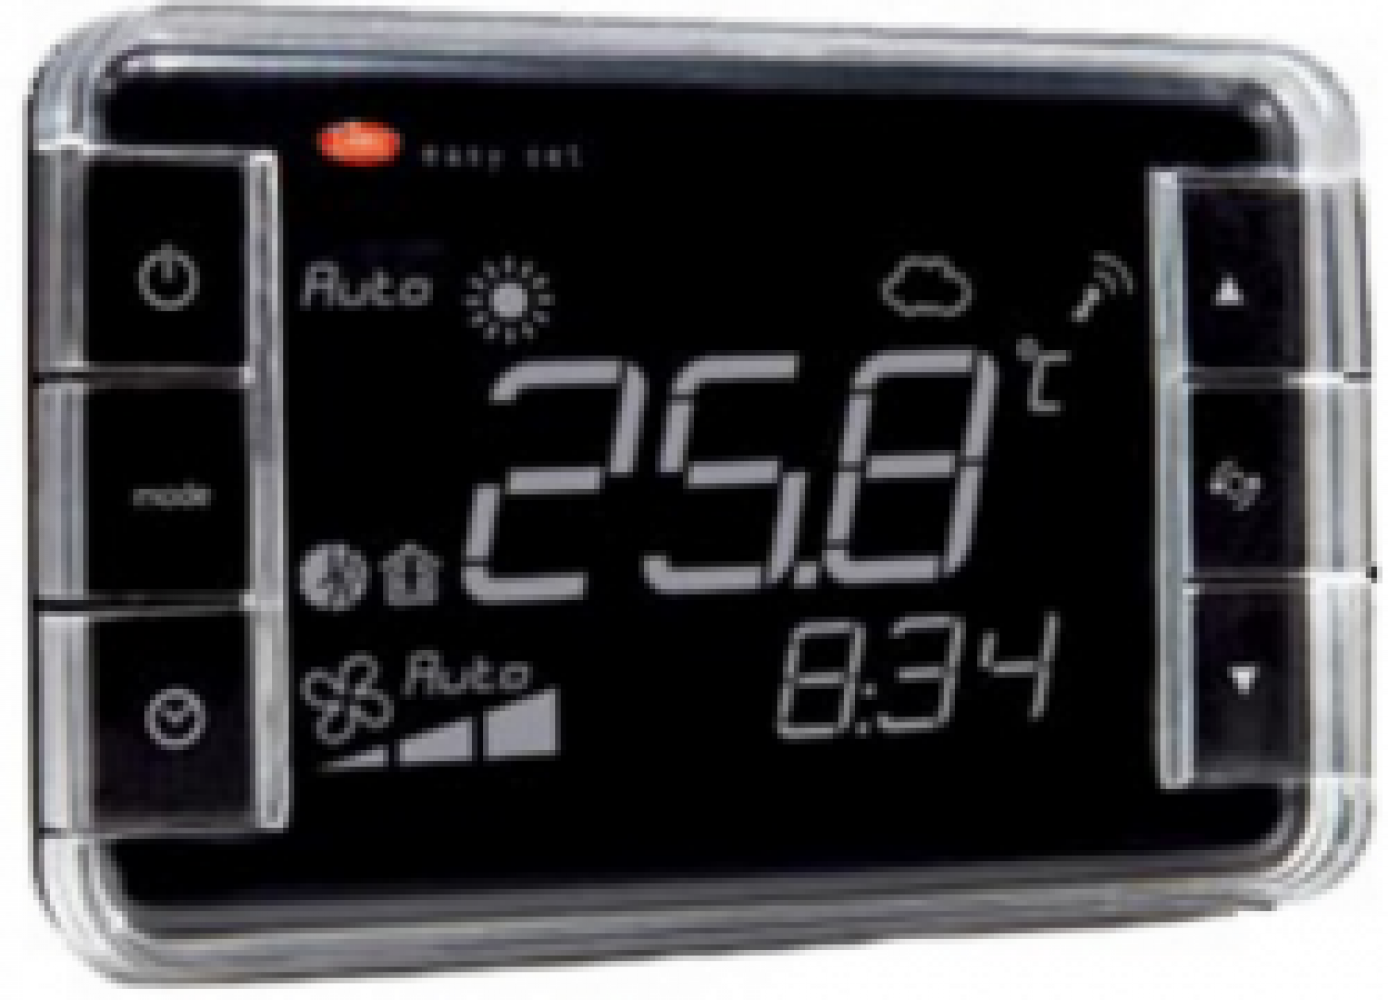 EW01TA1400 Термостат Easyset для e-dronic, контроль температуры, корпус белого цвета, &quot;инверсное&quot; отображение, подсветка